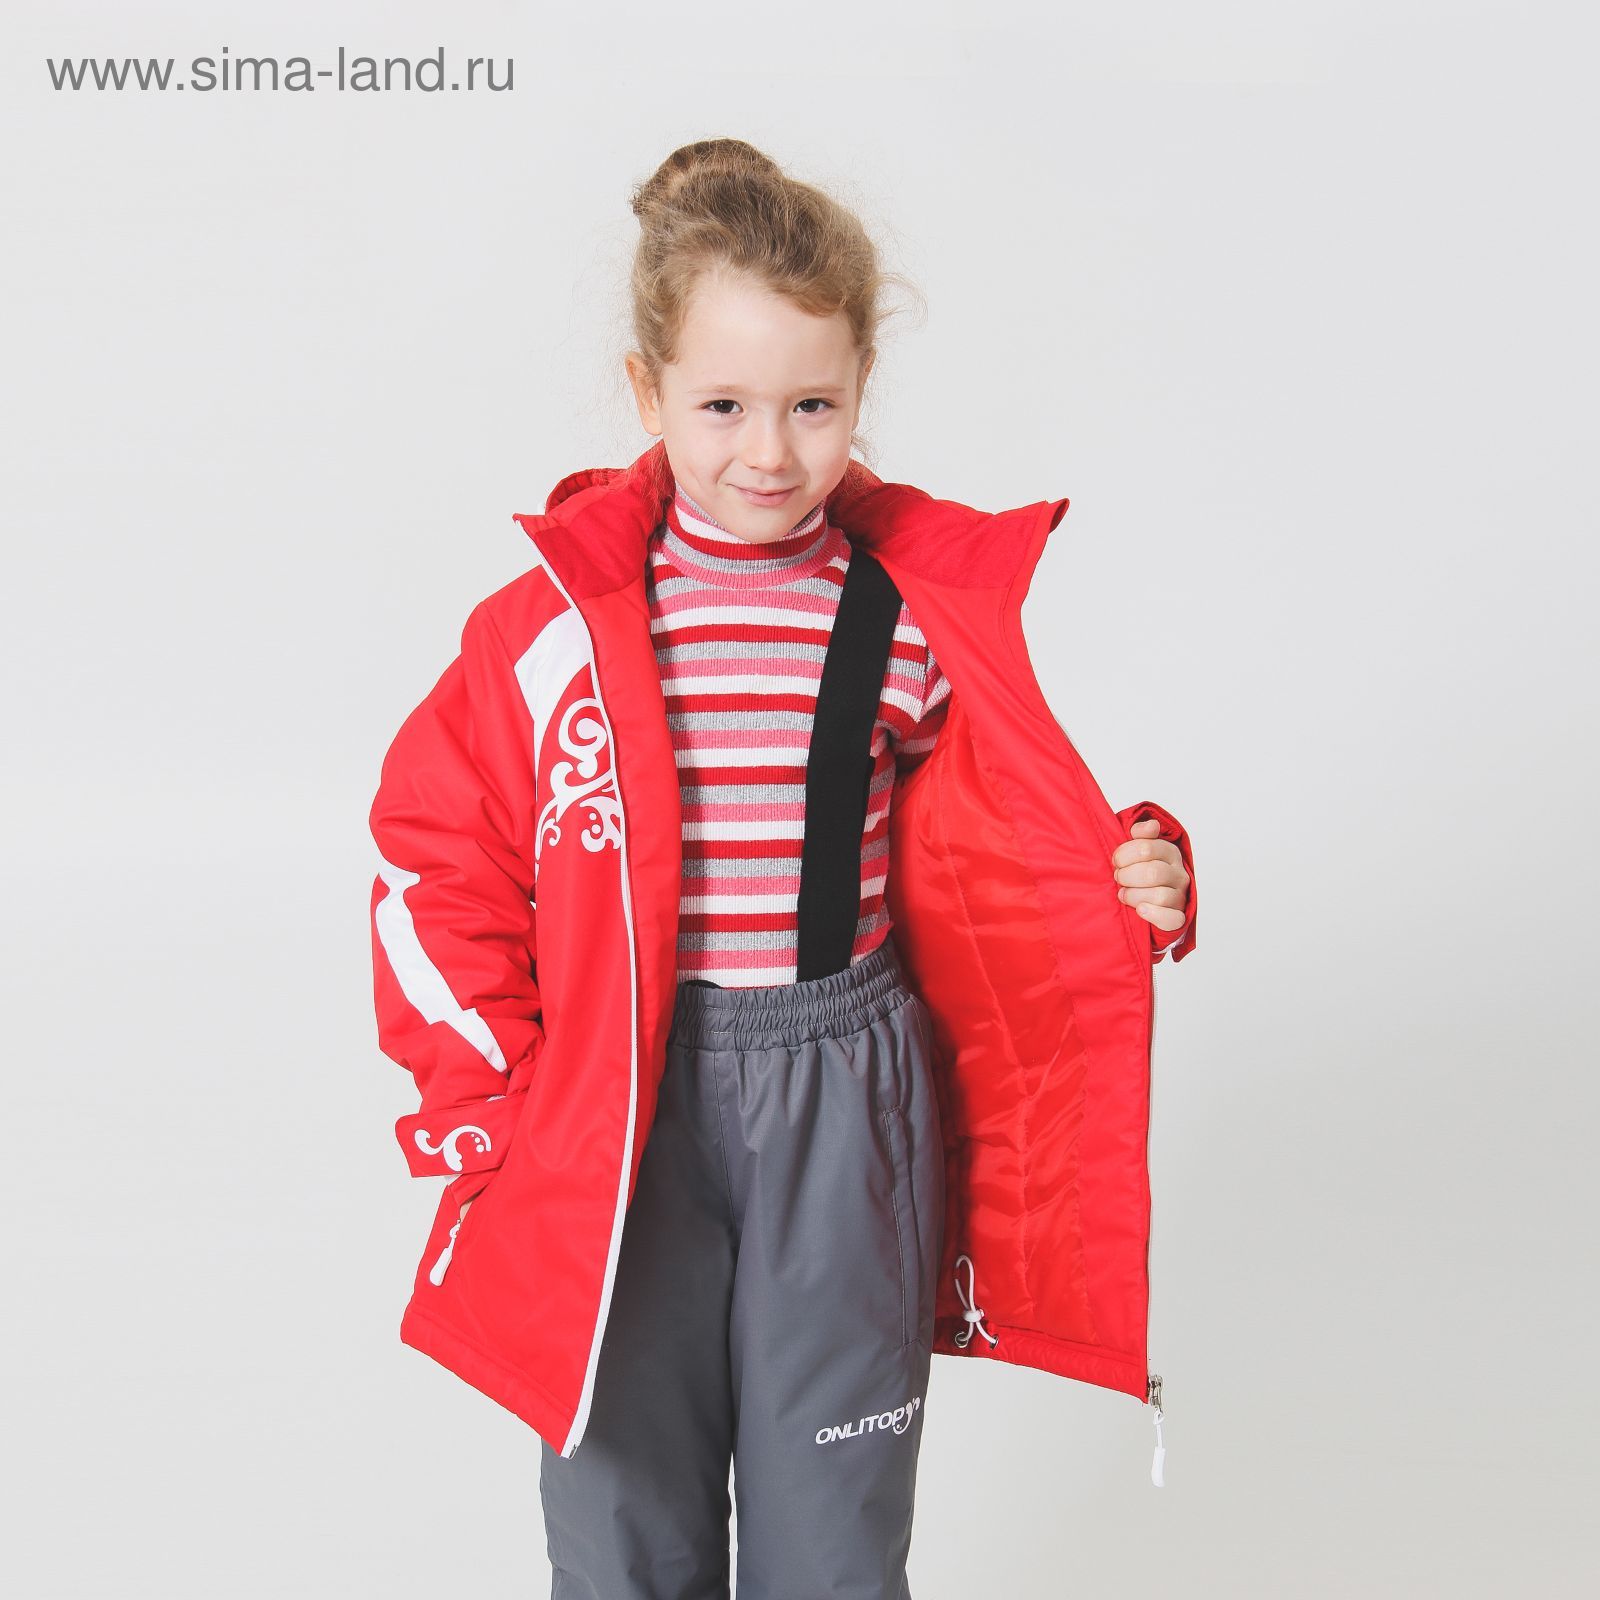 Костюм детский ( куртка+штаны) ONLITOP,куртка-красно/белая; штаны-серые (р. 34)